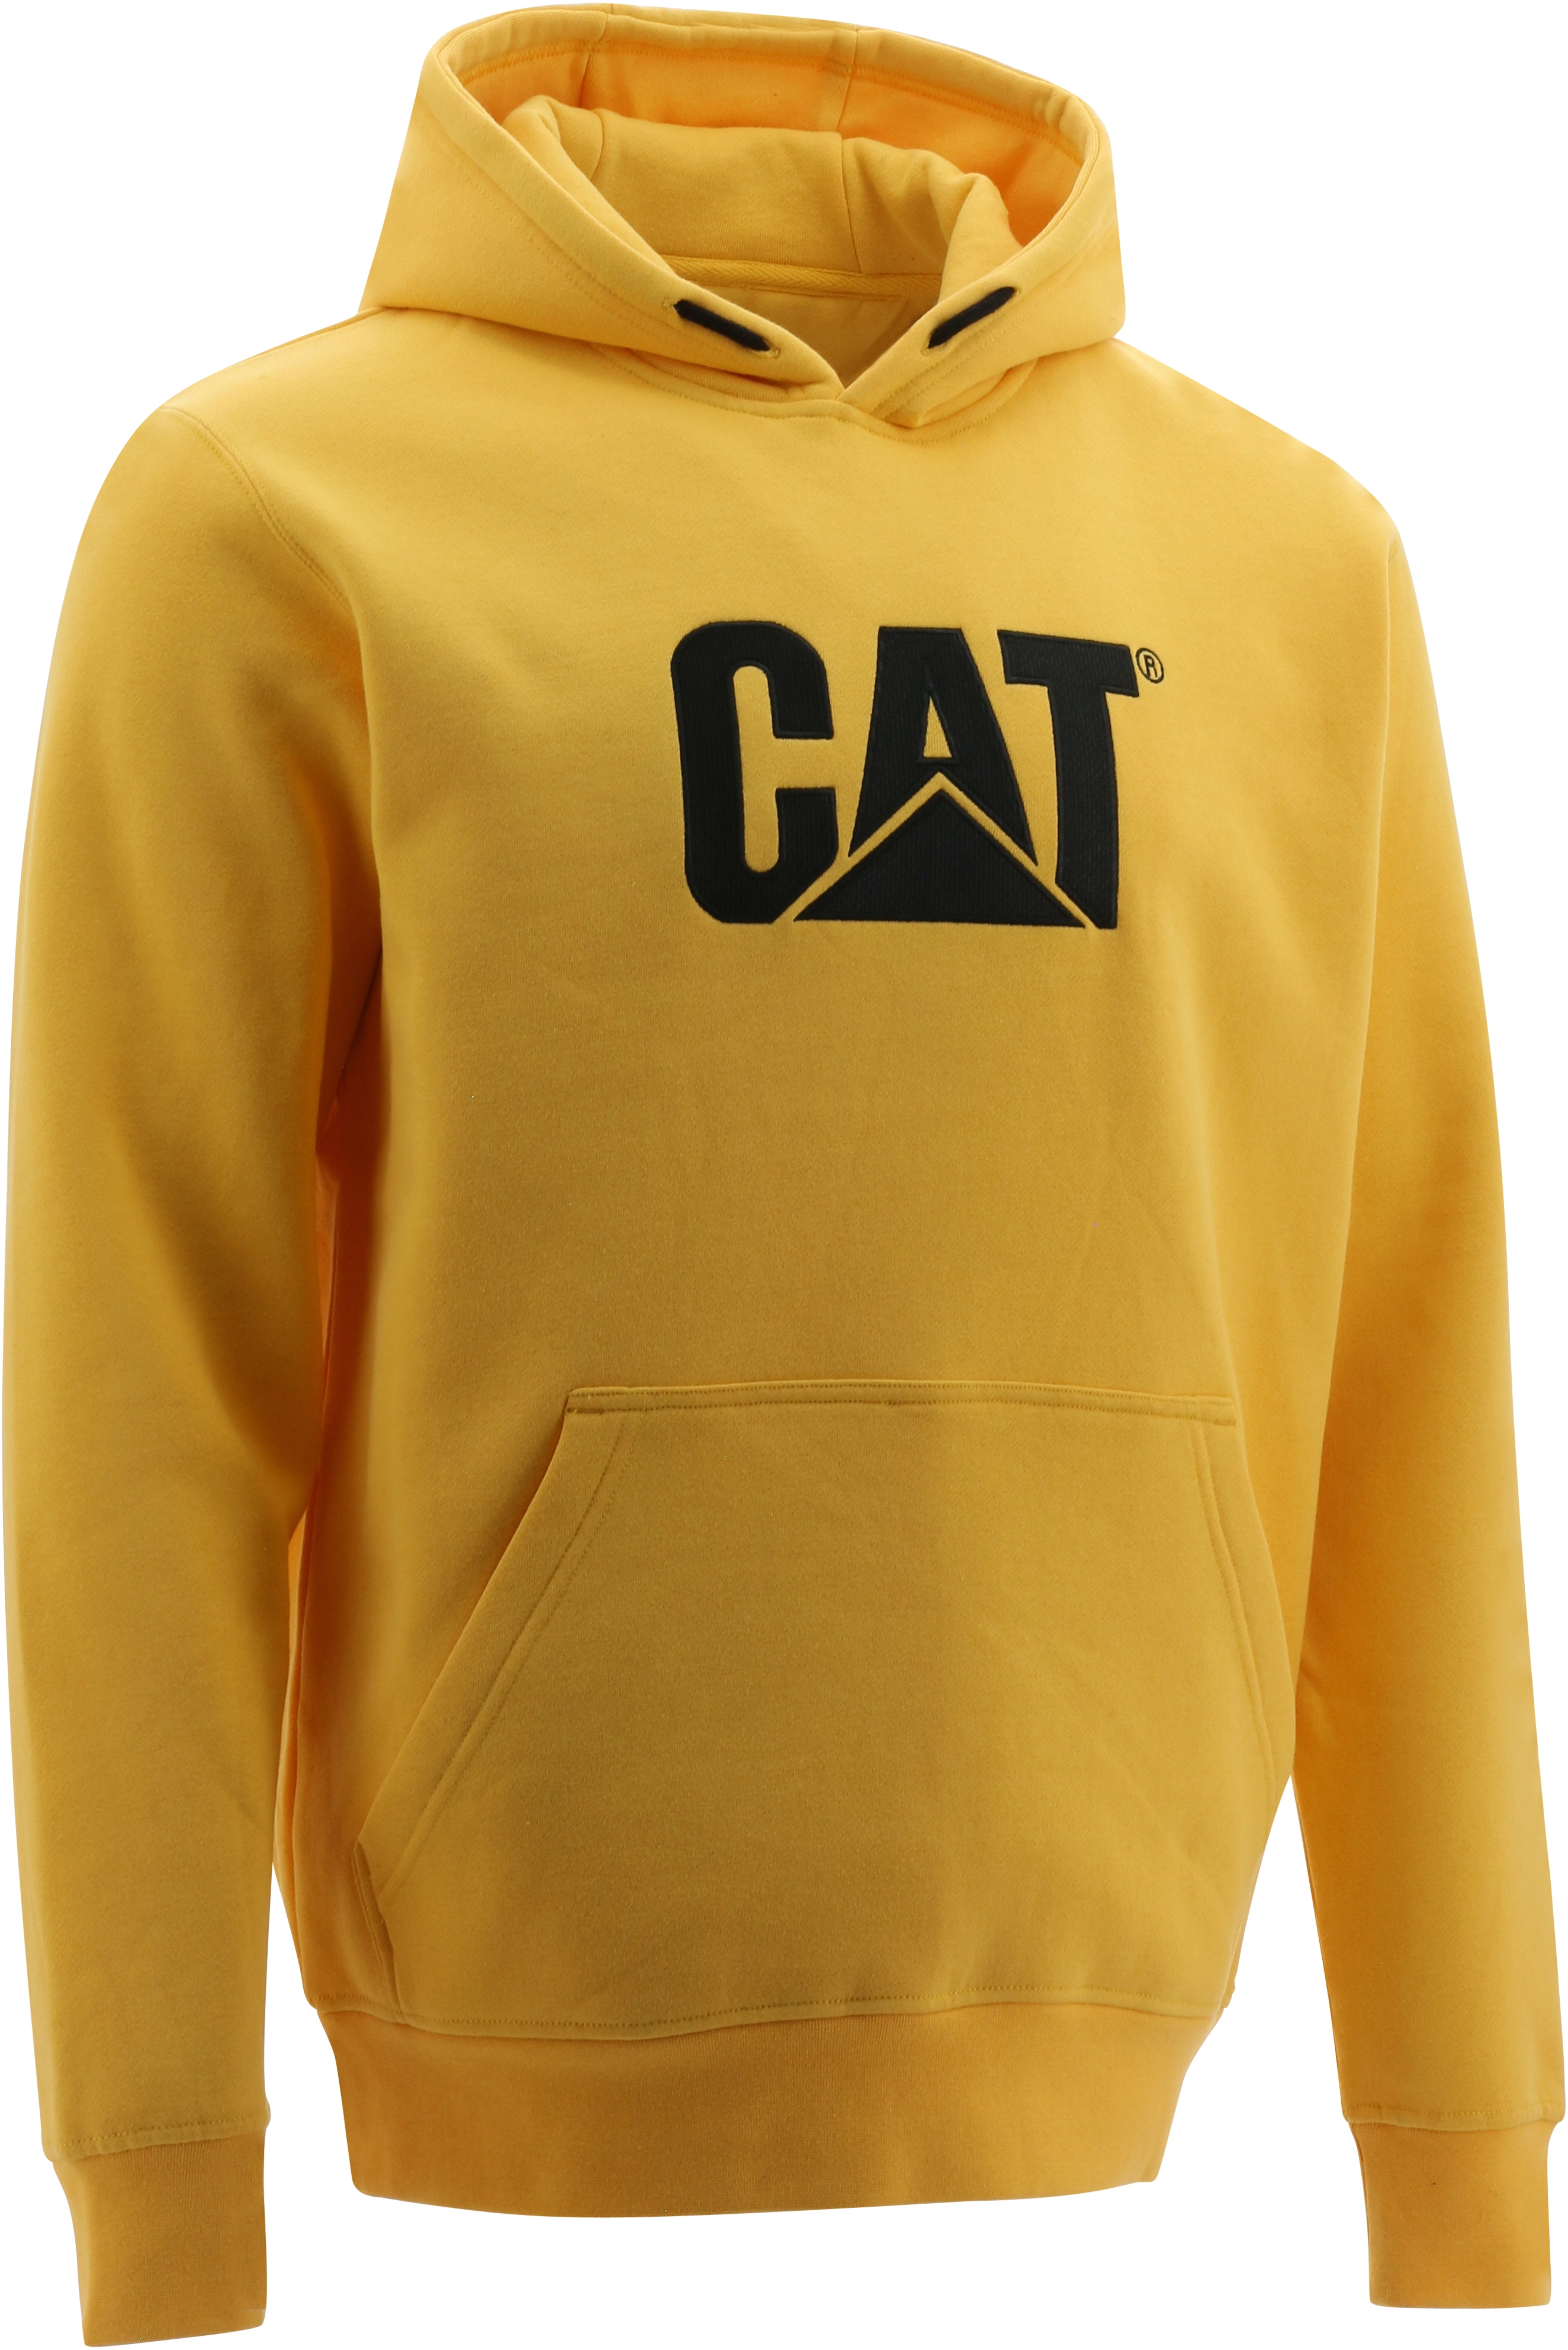 Cat Hoodie Trademark Gelb M kaufen bei OBI